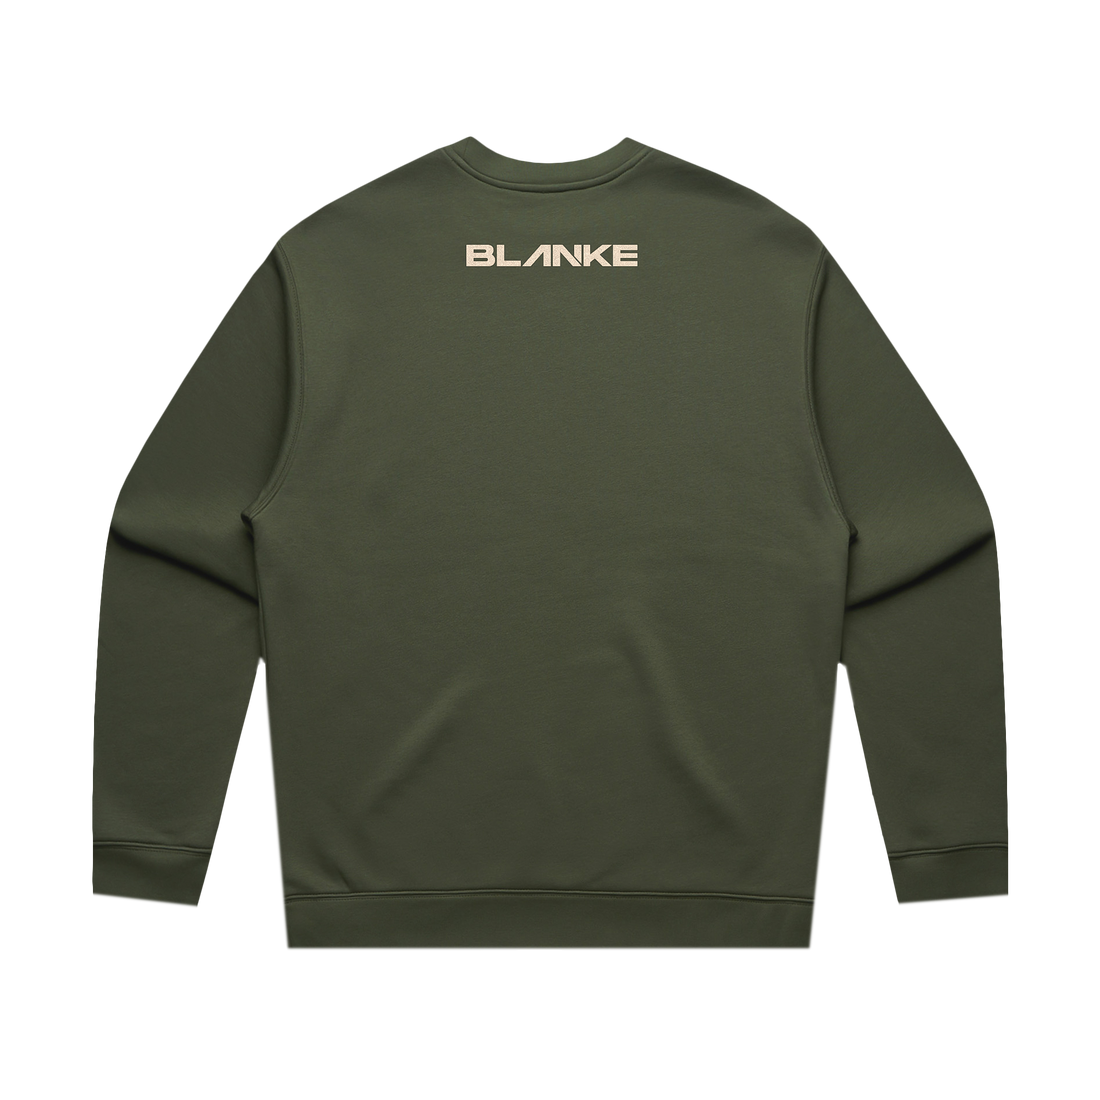 Blanke - Botanical - Crew Neck Sweatshirt